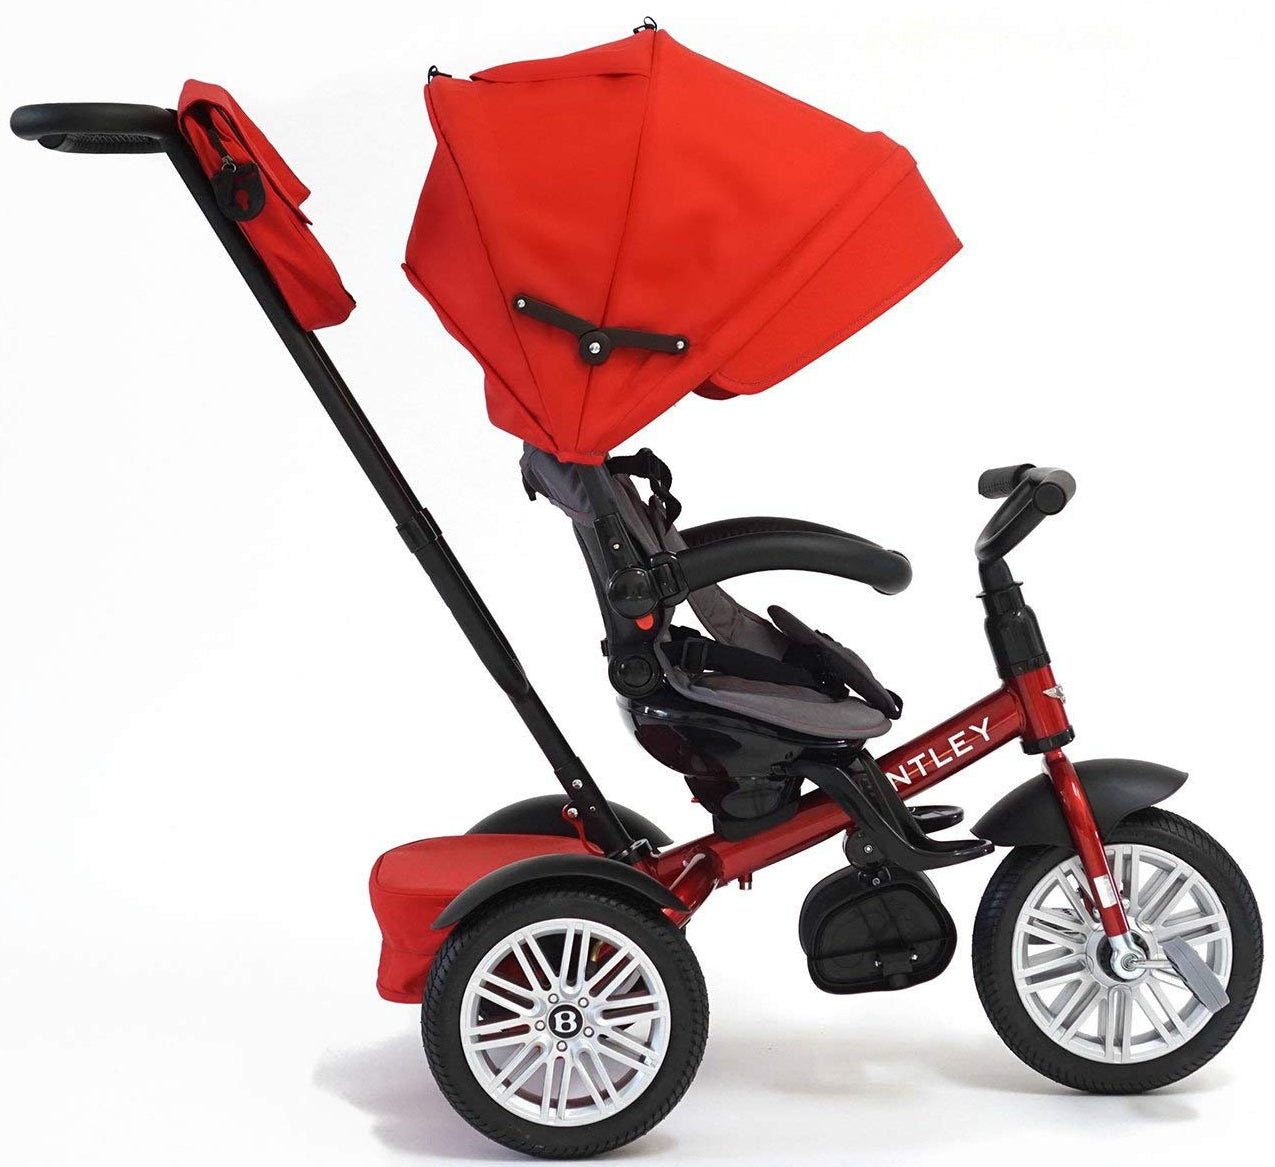 bentley baby stroller